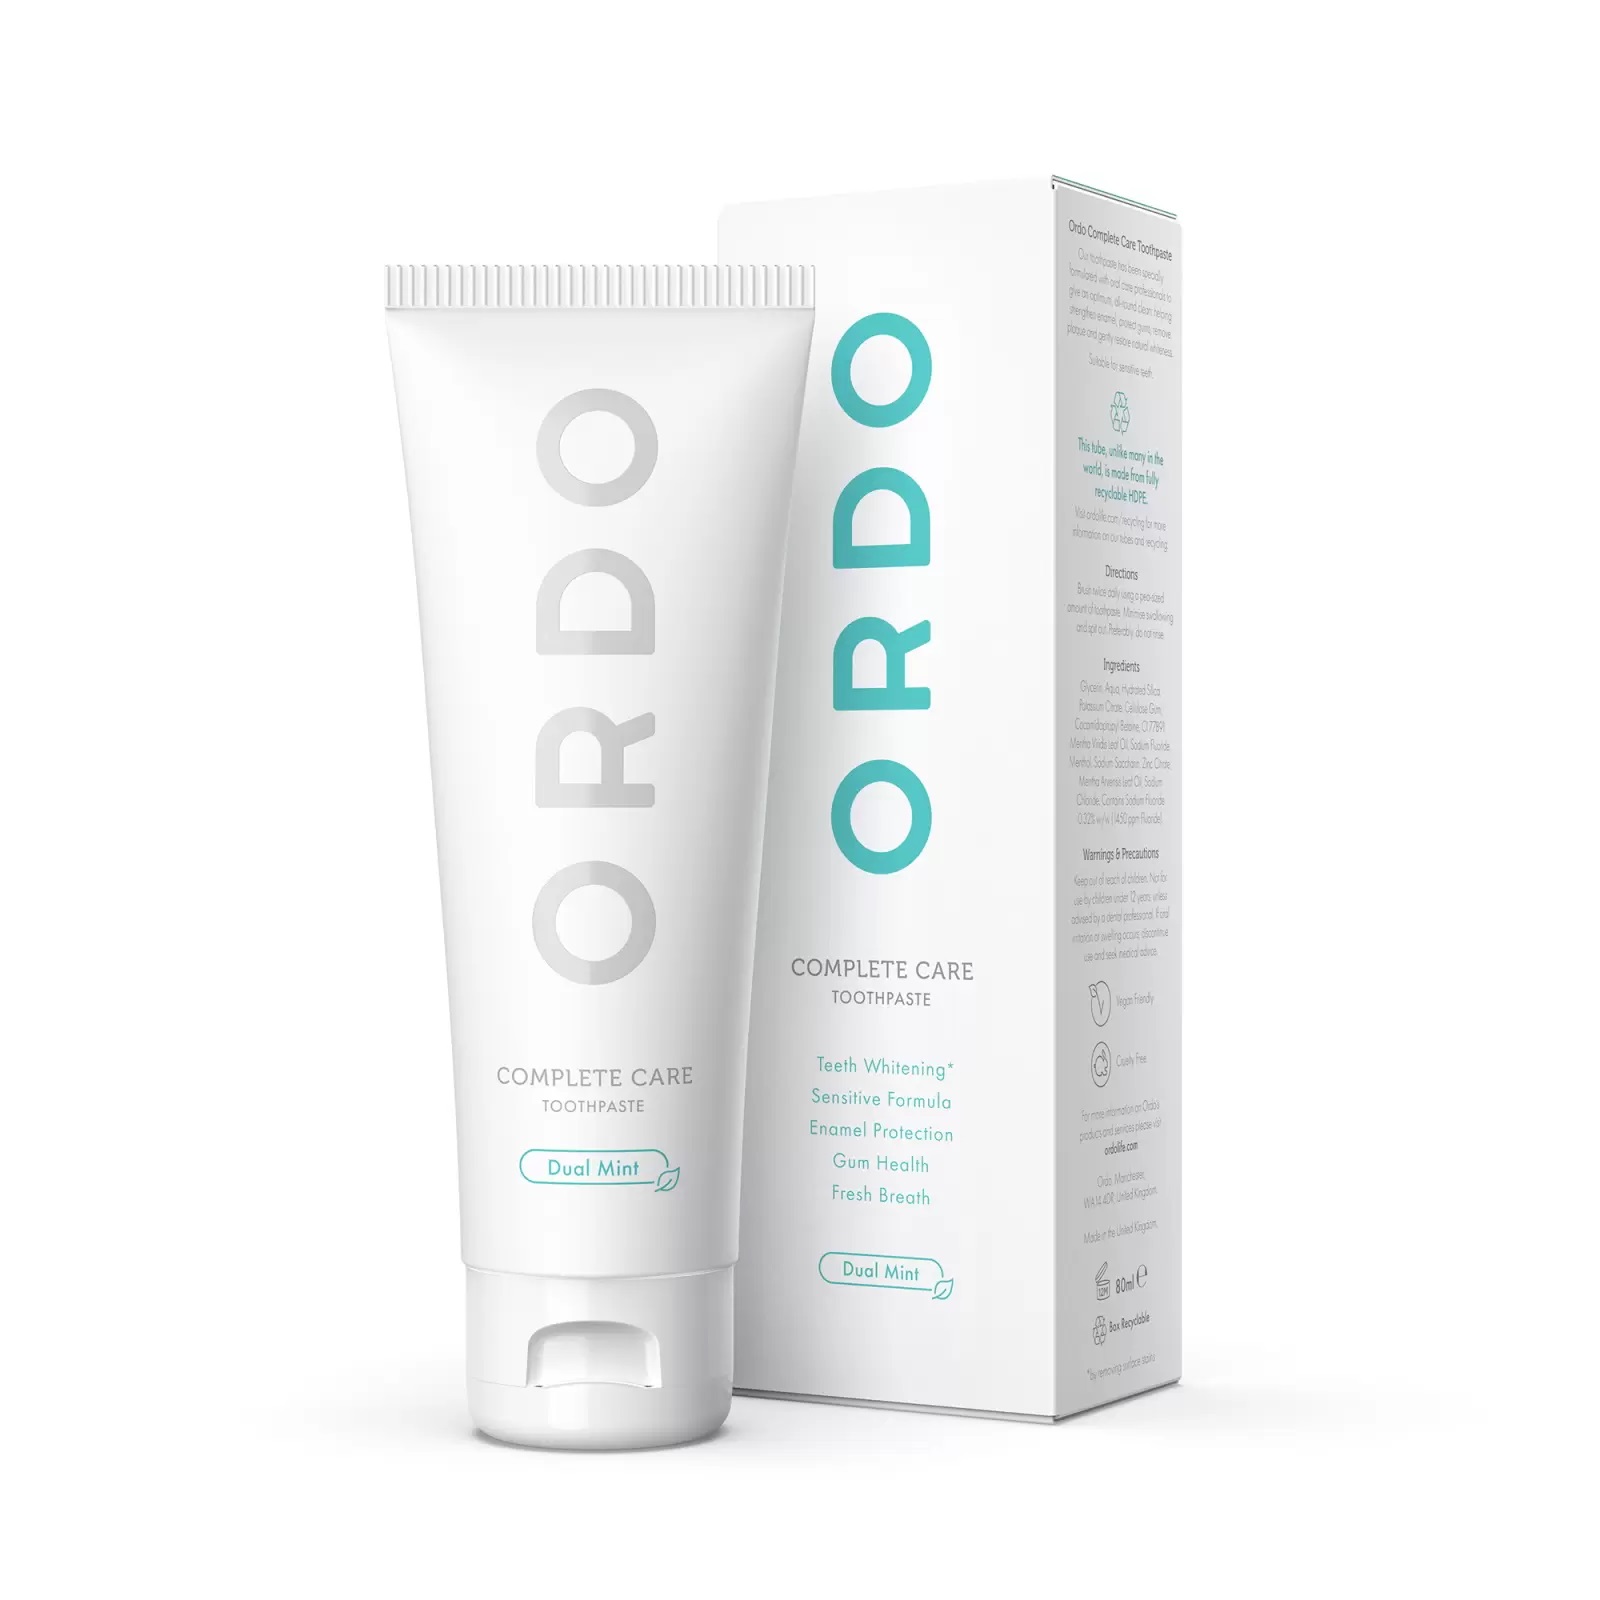 Зубная паста Ordo Ordo Complete Care, 80 мл цена и фото